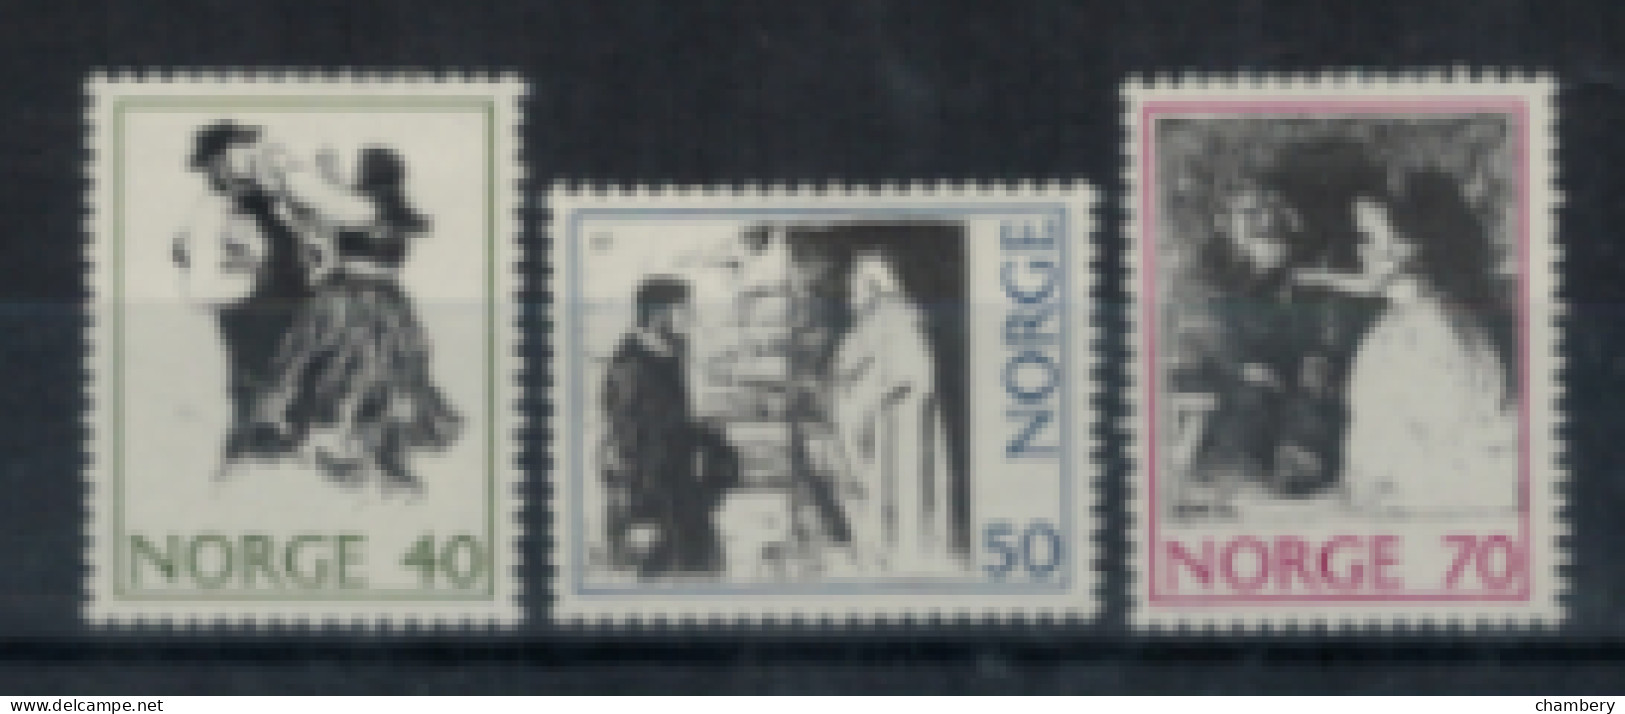 Norvège - "Dessins D'Erik Wareuskiedt" - Série Neuve 1* N° 586 à 588 De 1971 - Unused Stamps